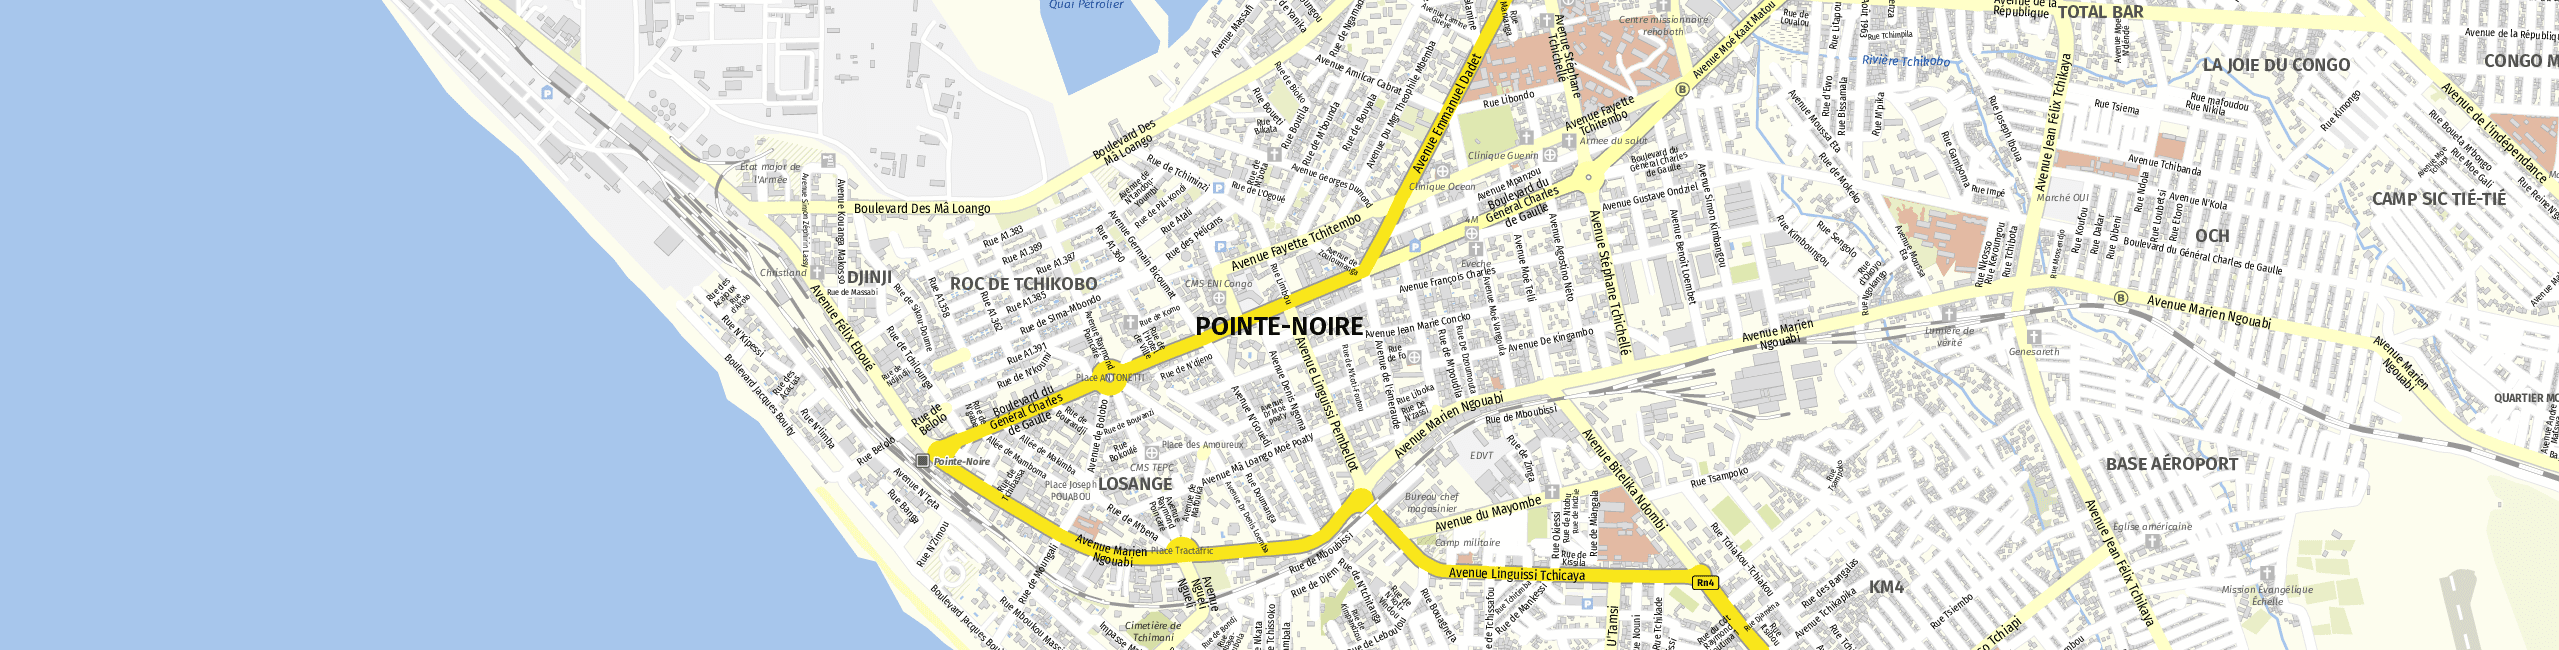 Stadtplan Pointe-Noire zum Downloaden.